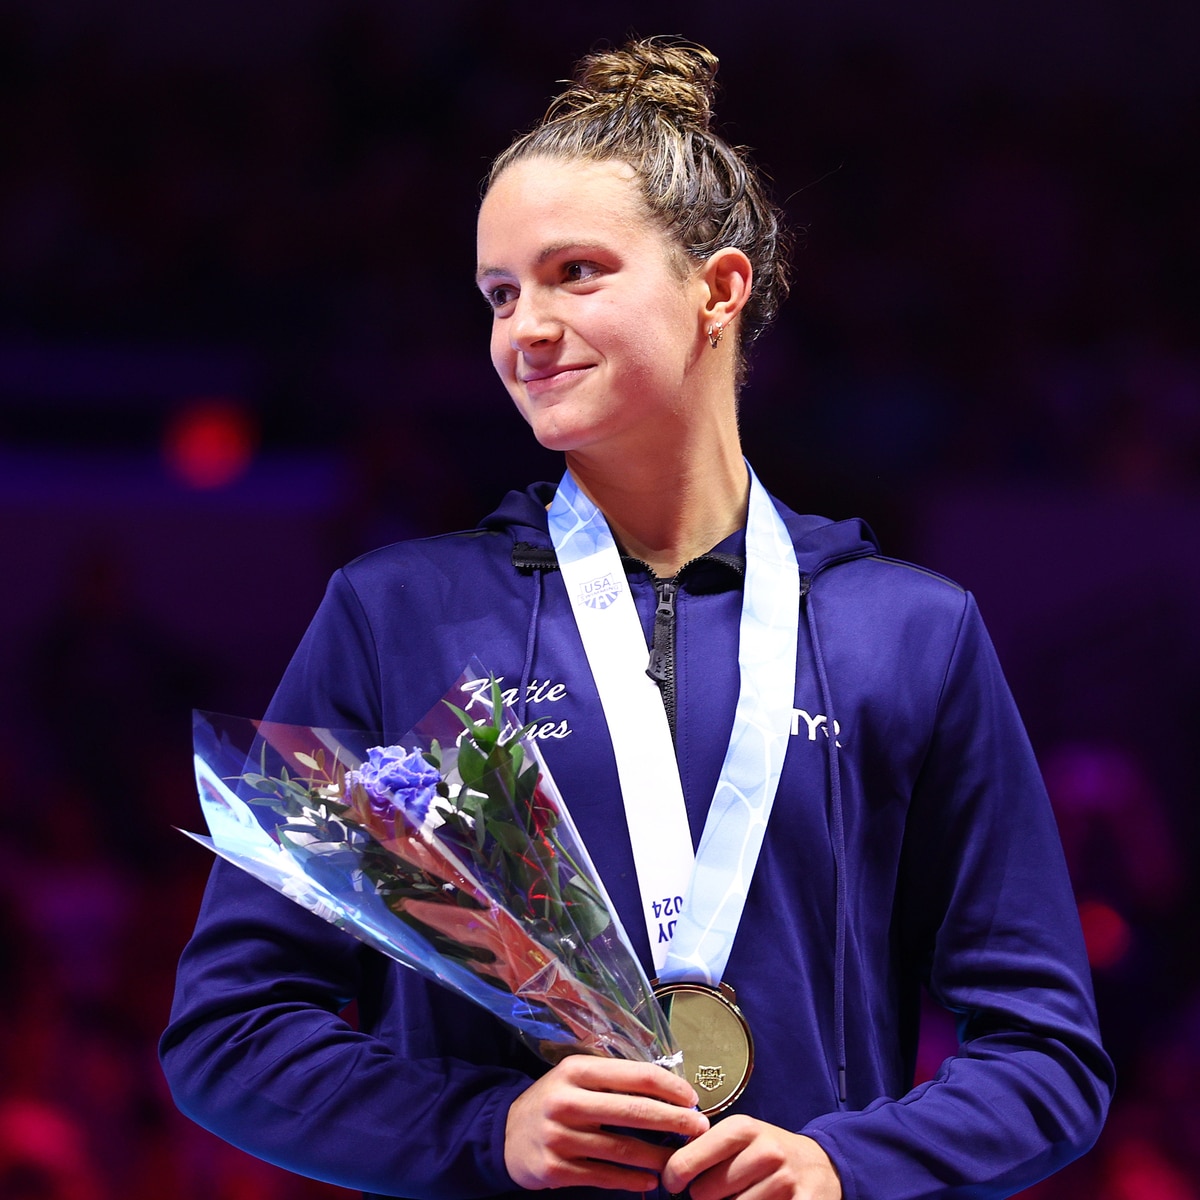 Conheça Katie Grimes, a nadadora olímpica que está sendo considerada o futuro de seu esporte